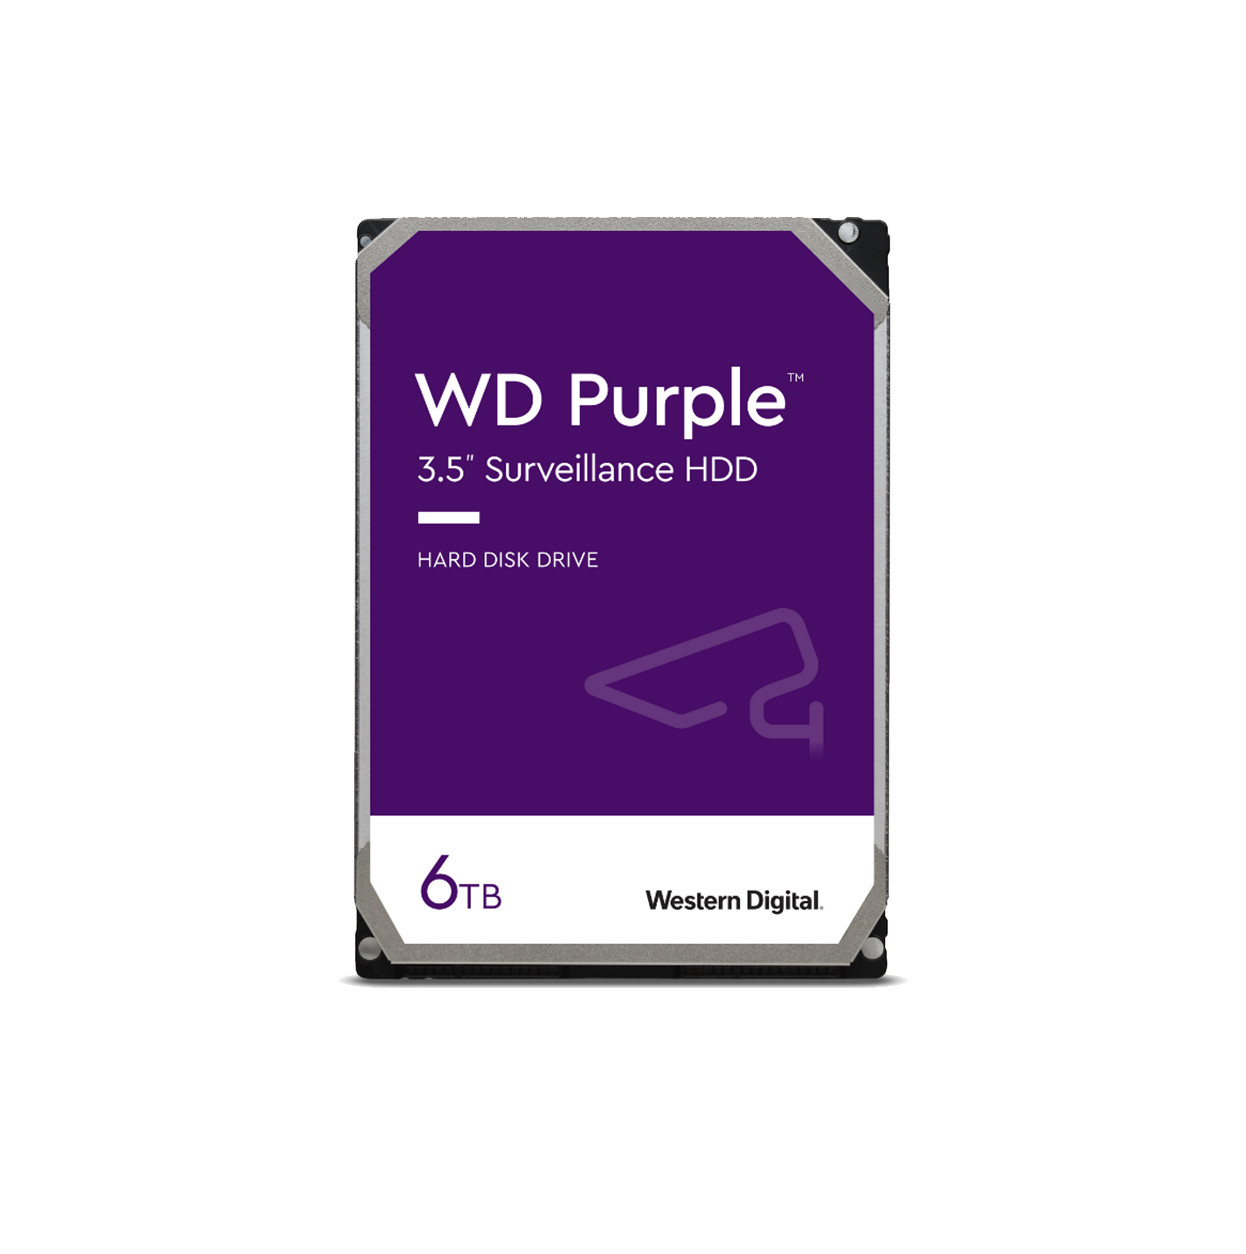 Western Digital HD Purple Surveillance Hard Drive, 6TB, 5400RPM